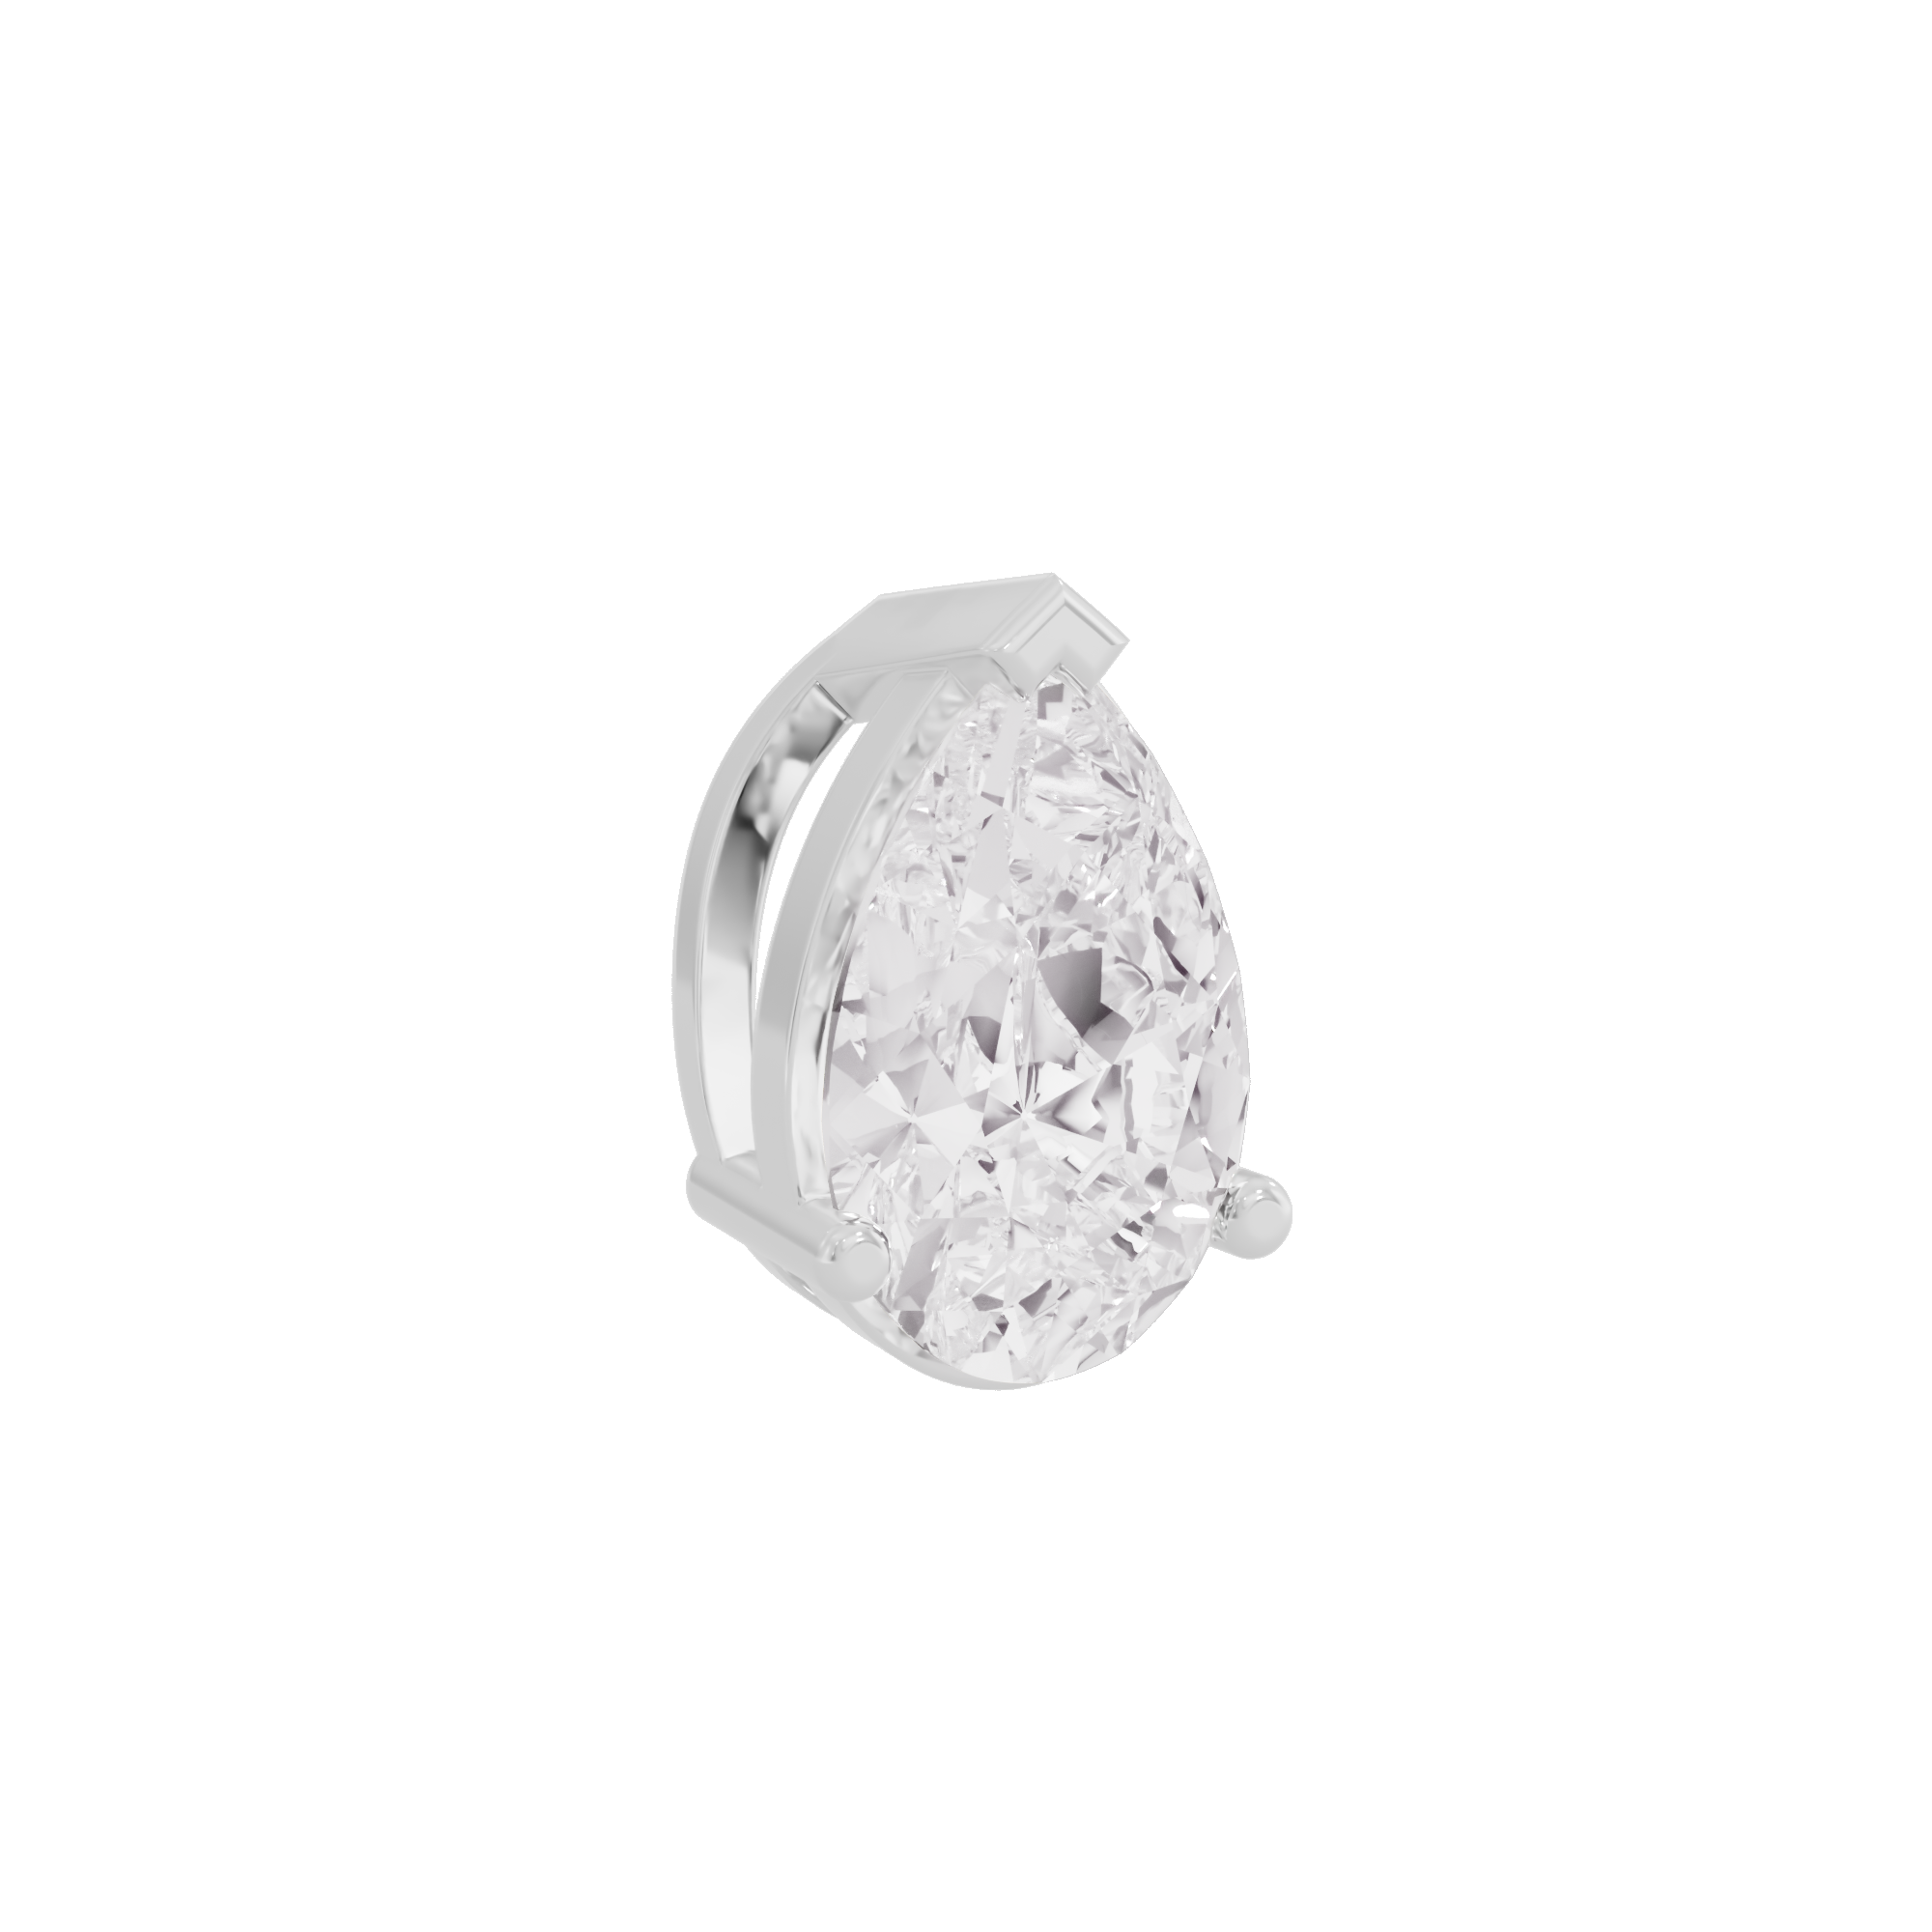 Everlasting Radiance Diamond Pendant